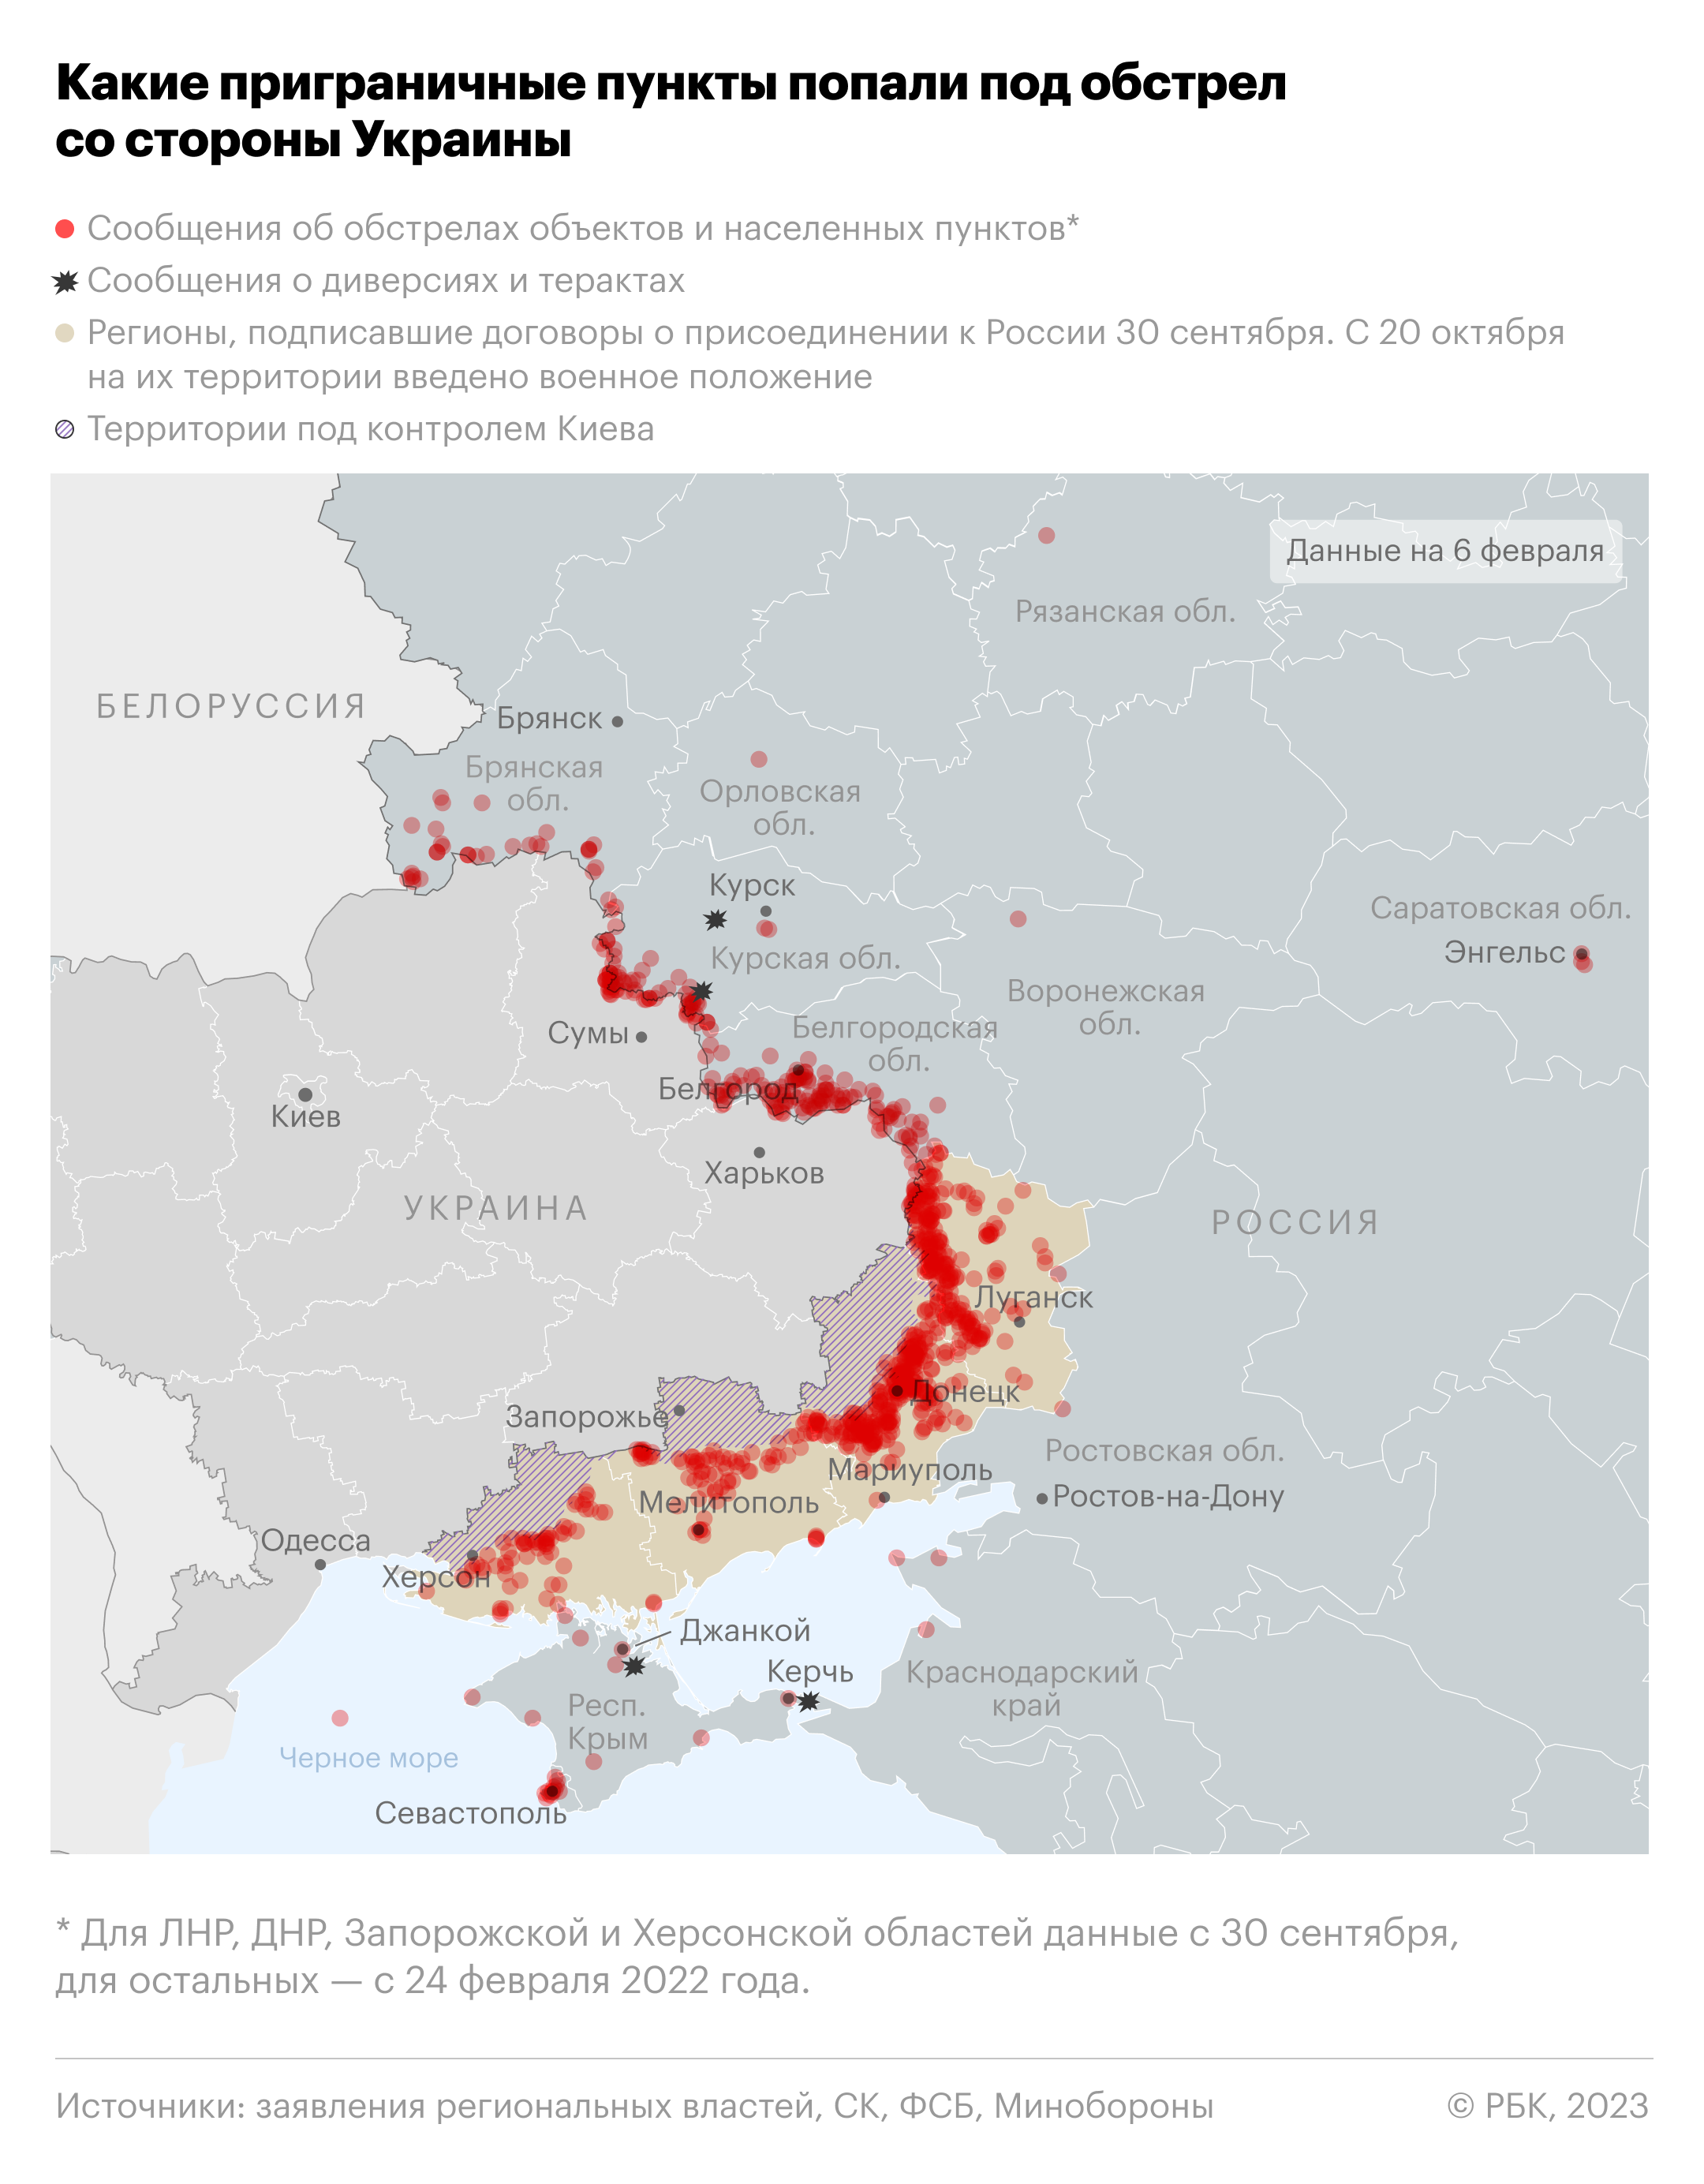 Какие приграничные пункты попали под обстрел со стороны Украины. Карта